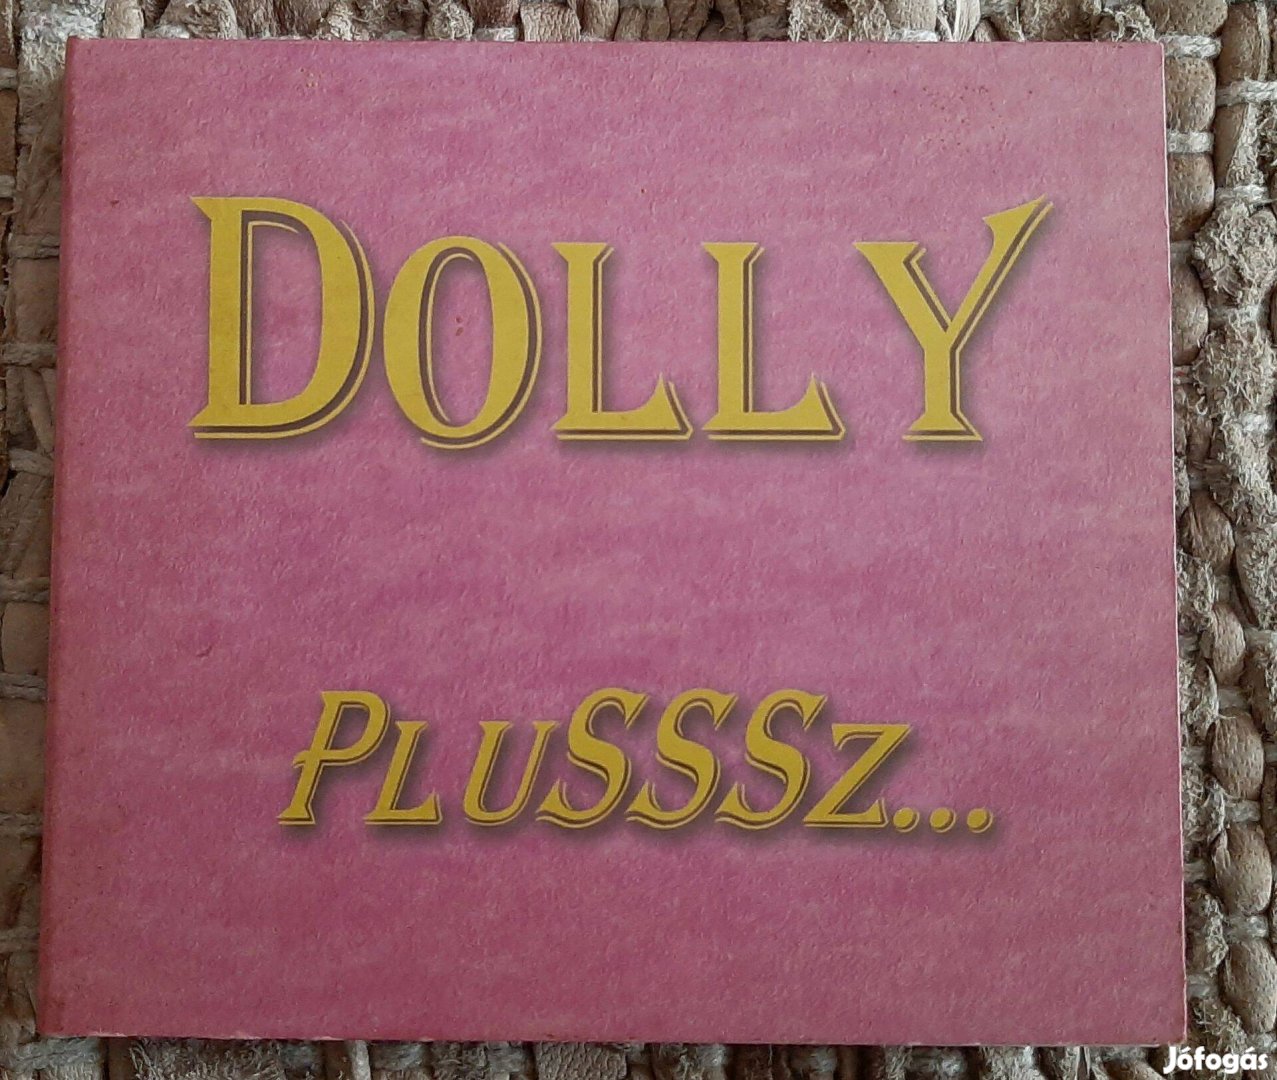 Dolly Plusssz CD